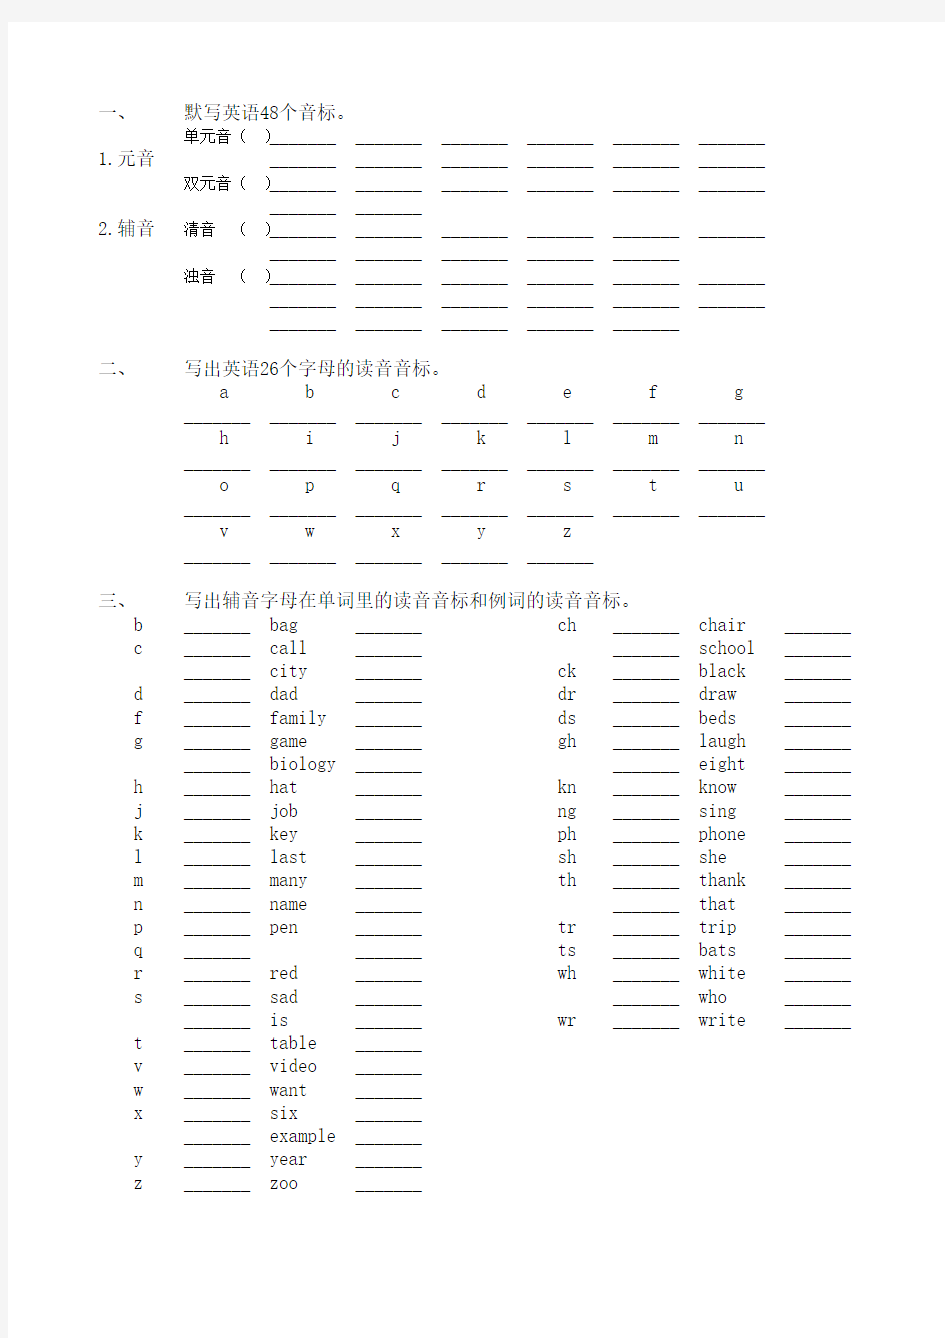 英语国际音标表(48个) Microsoft Excel